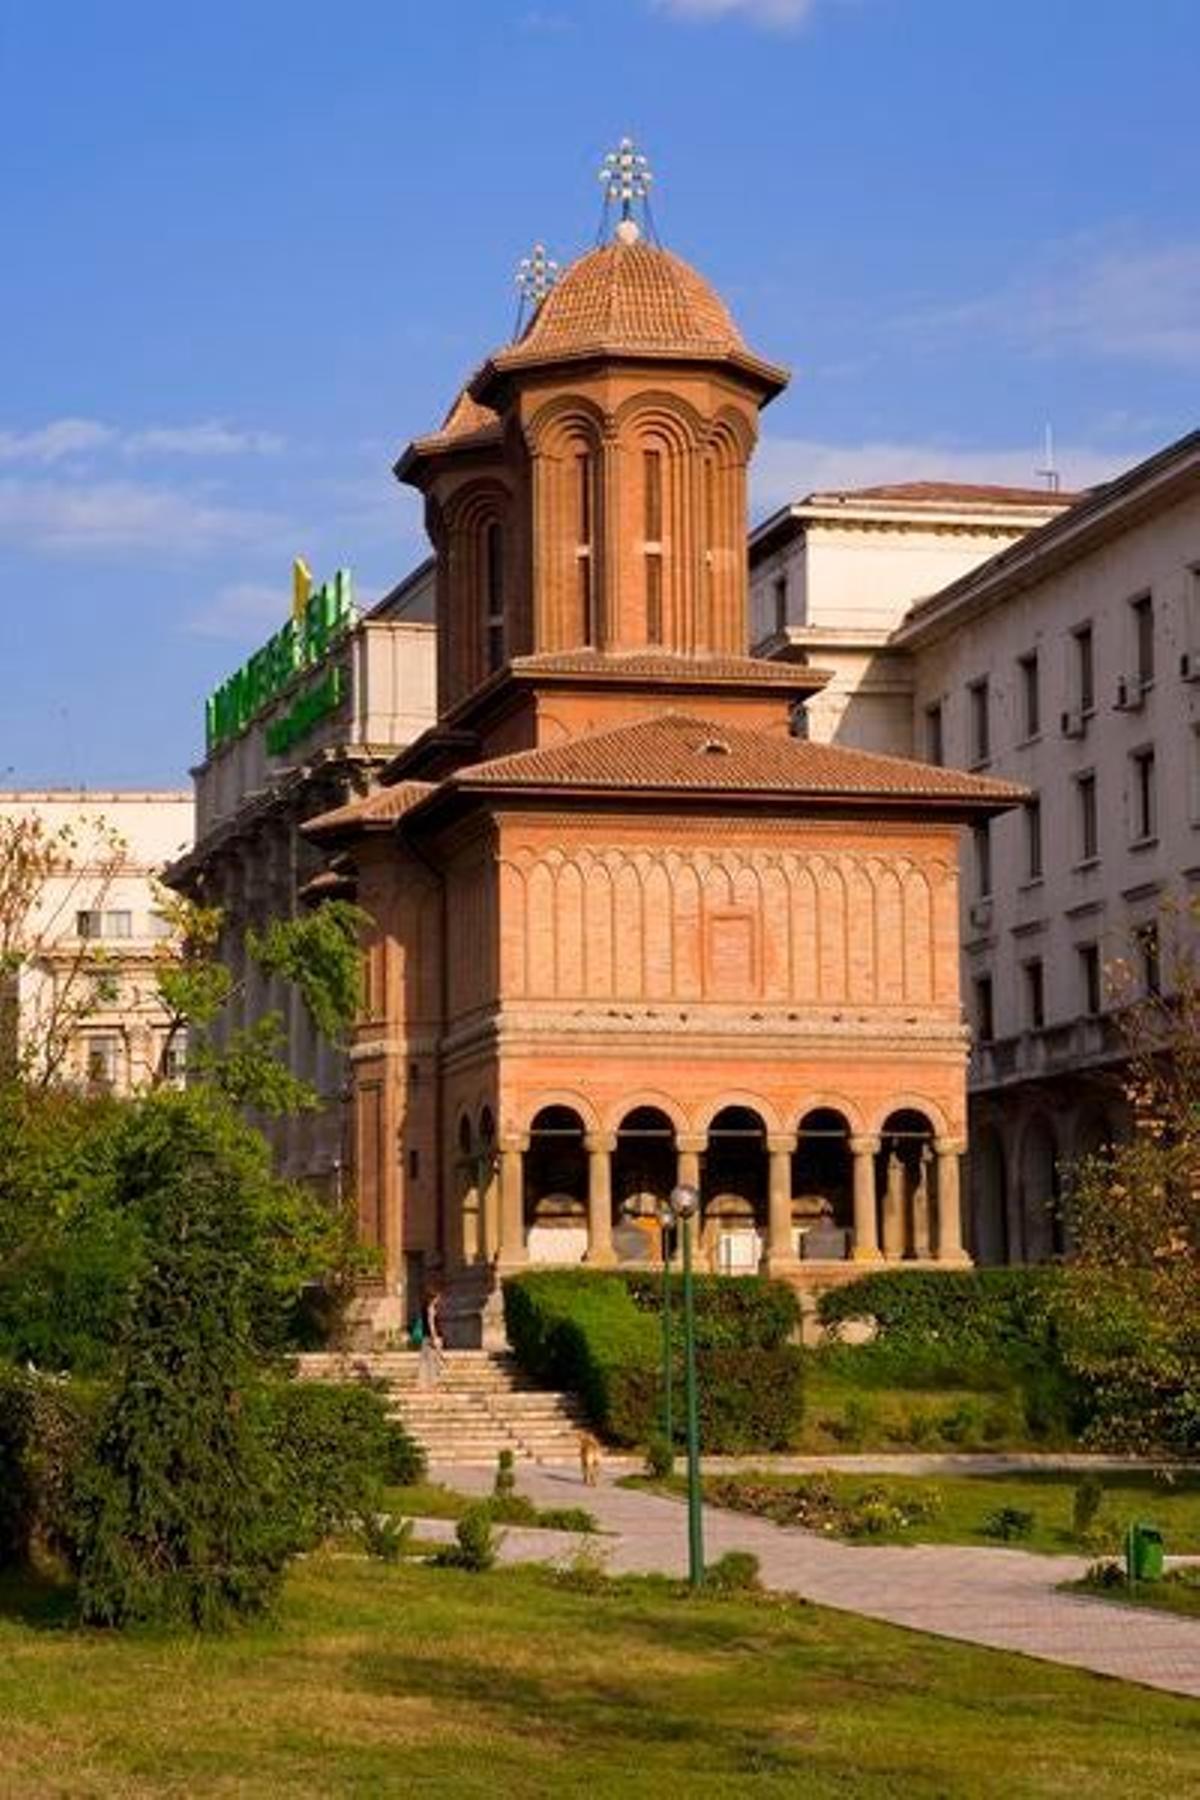 La Iglesia Cretulescu la mandó construir el atiguo señor Iordache Cretulescu